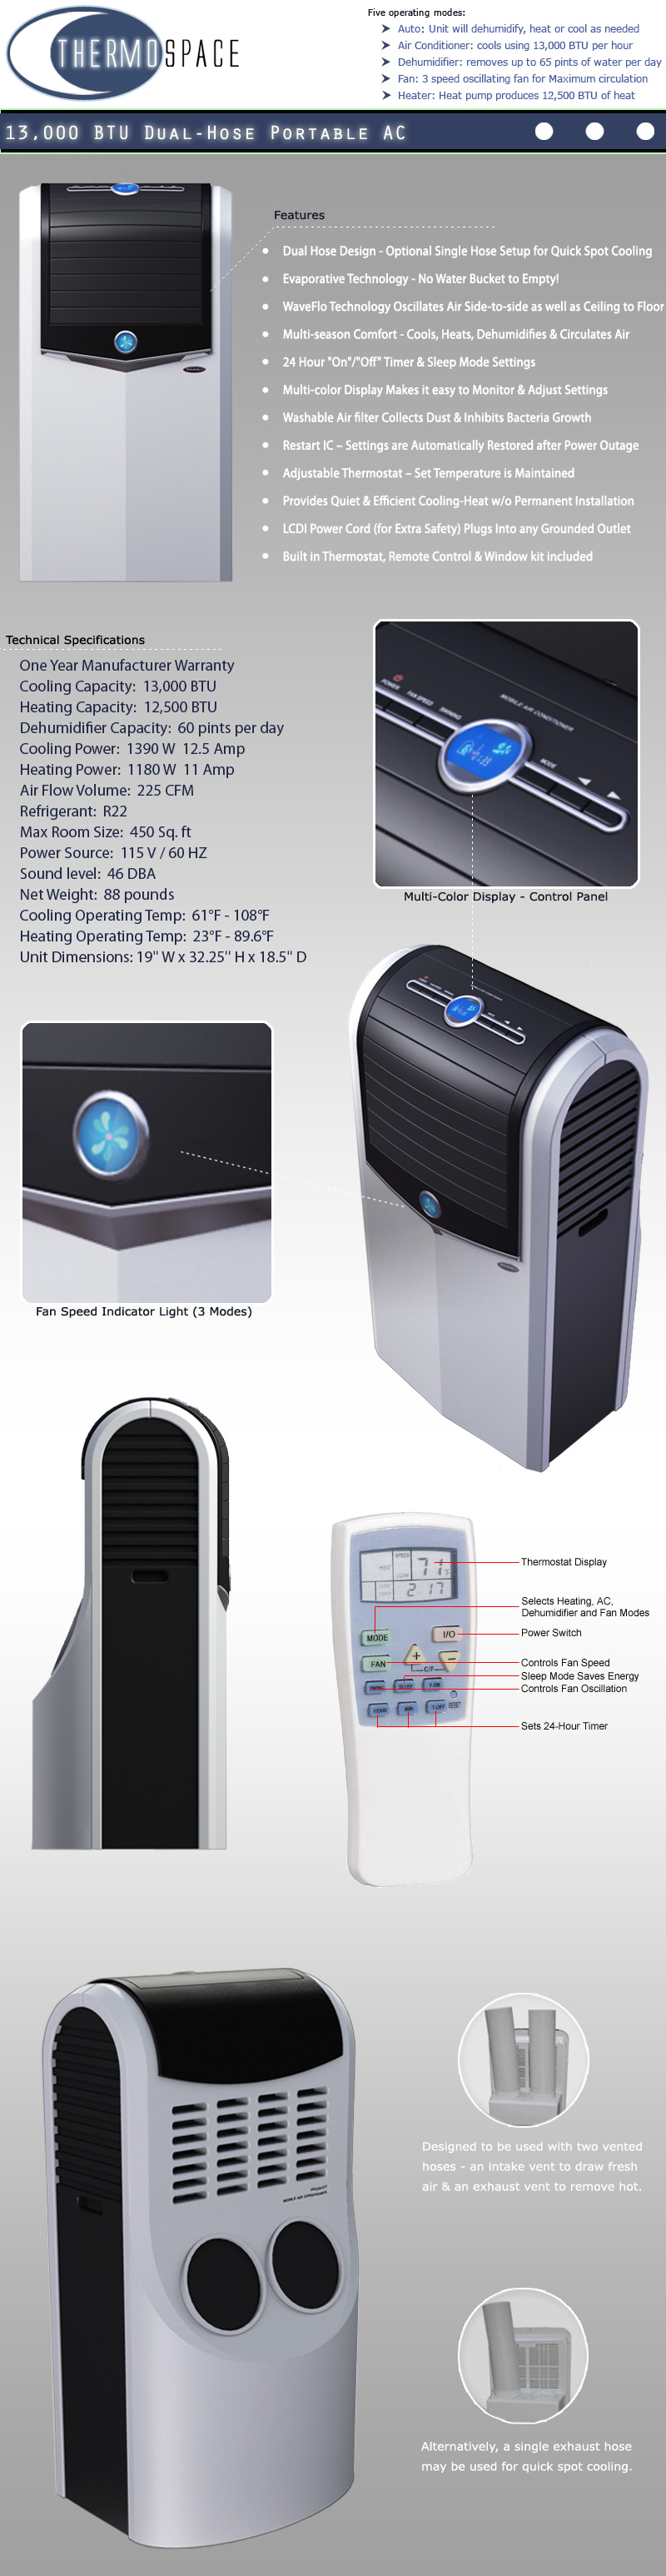 Portable Air Conditioner - Soleus LX150